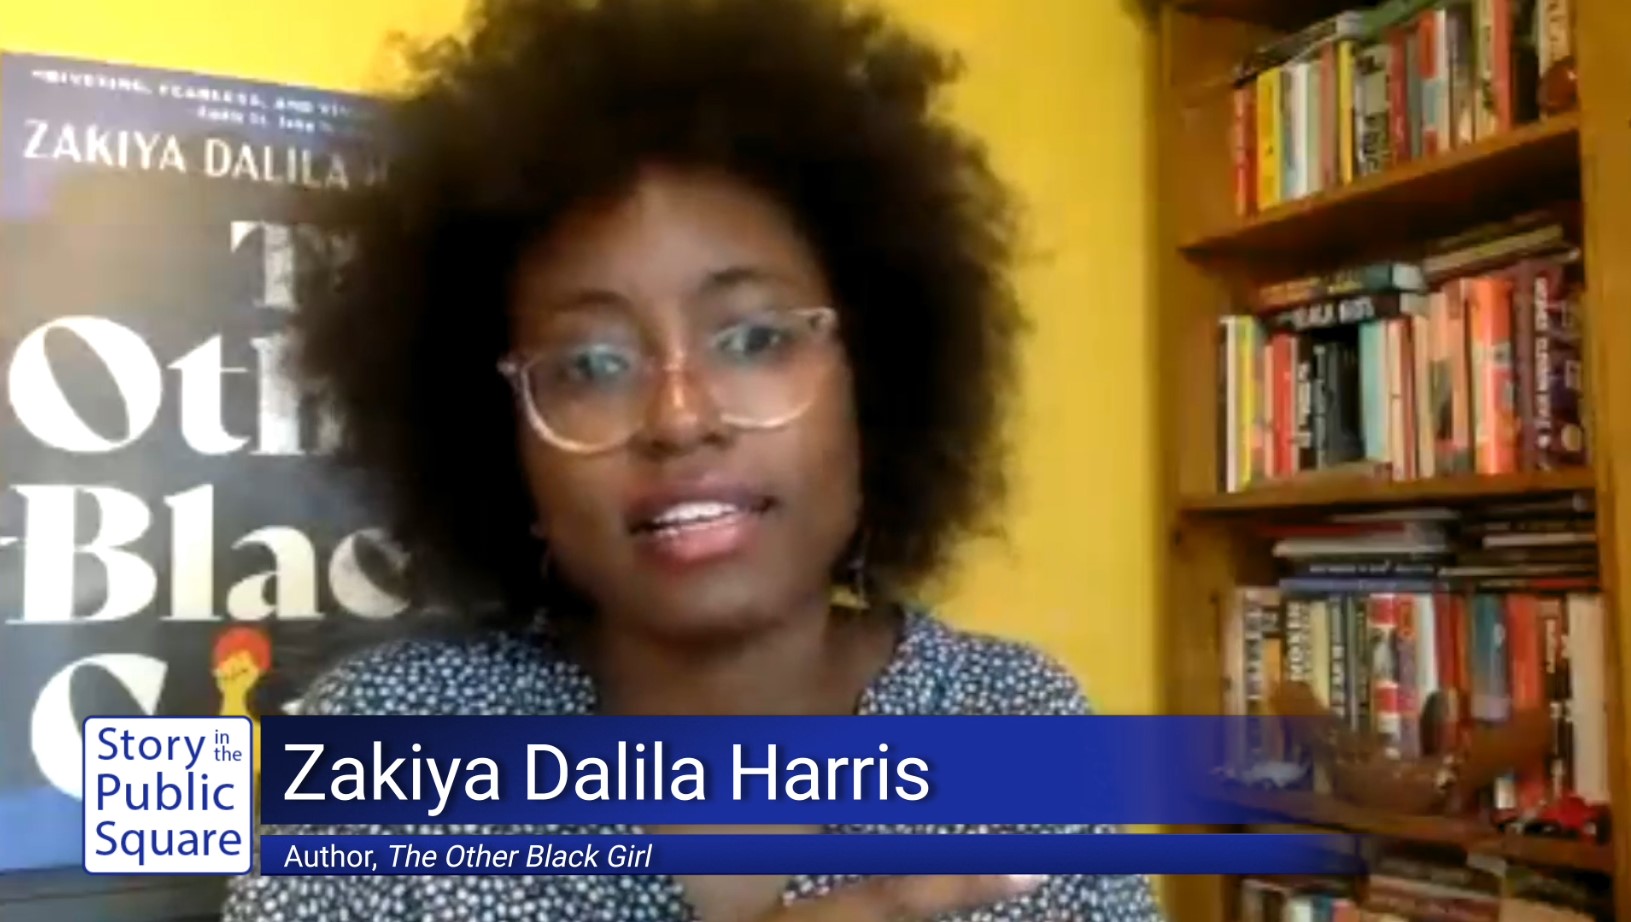 Zakiya Dalila Harris And Her Novel The Other Black Girl Pell Center